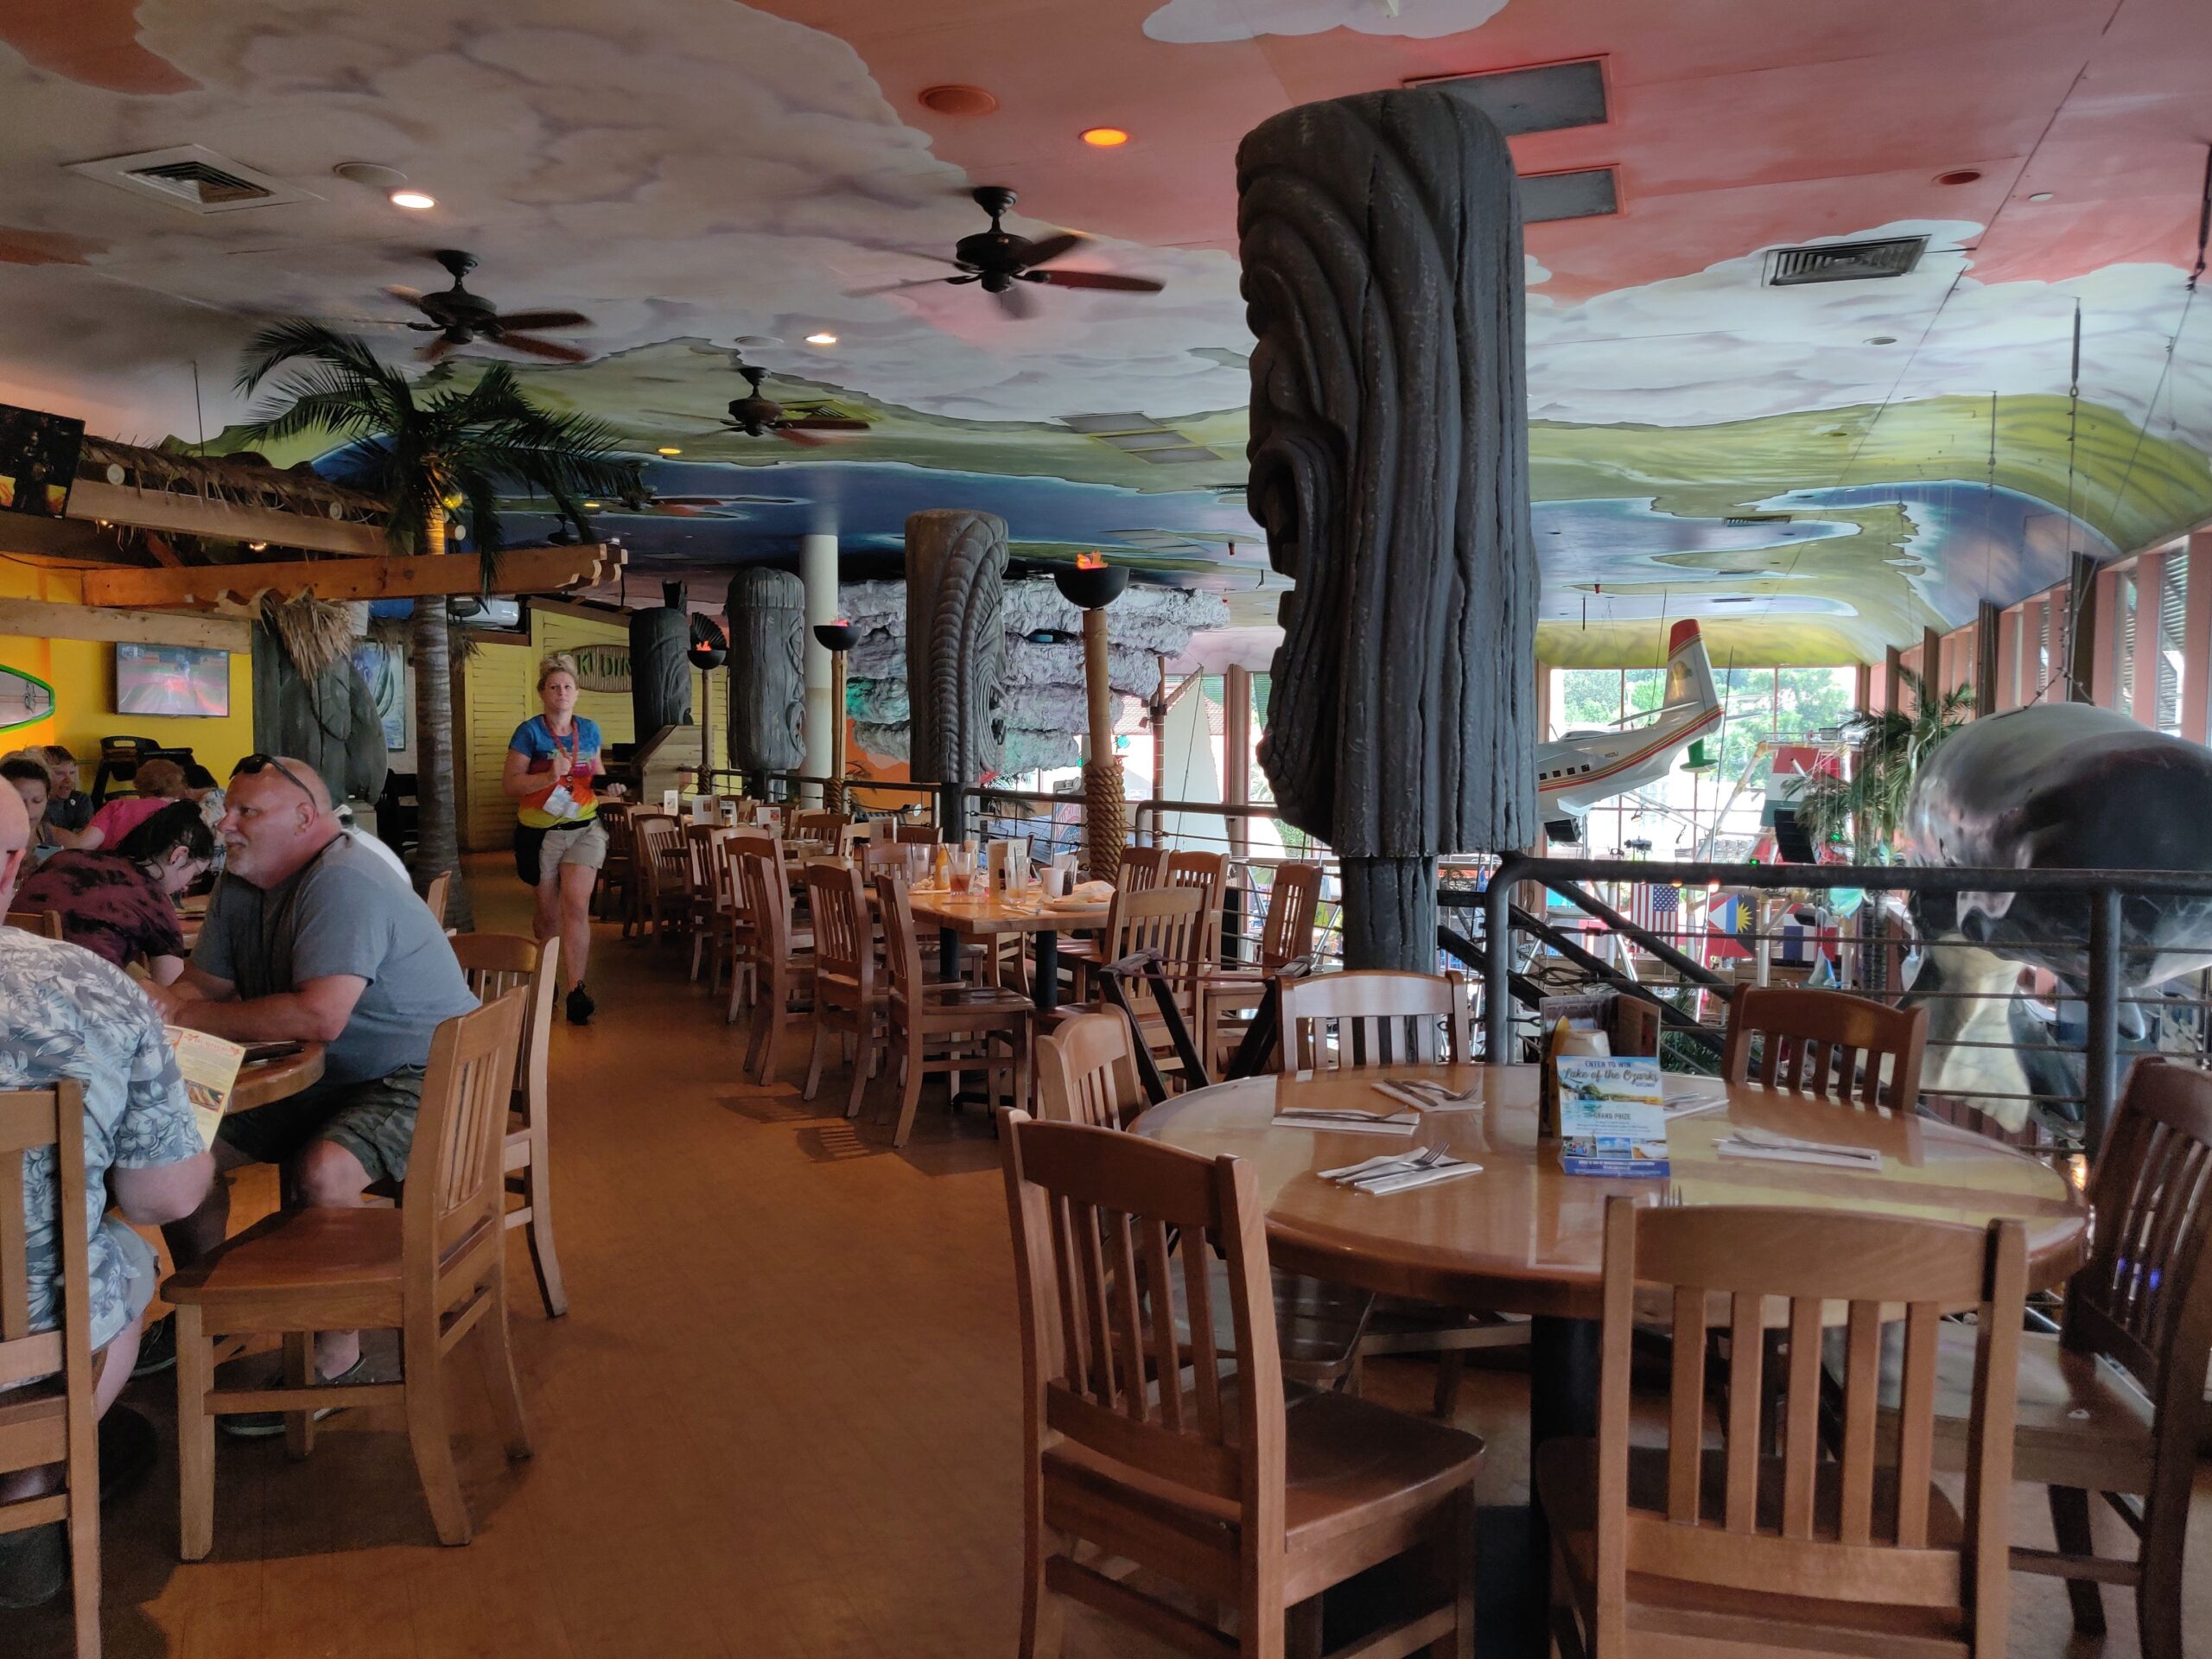 Margaritaville Restaurant – Myrtle Beach